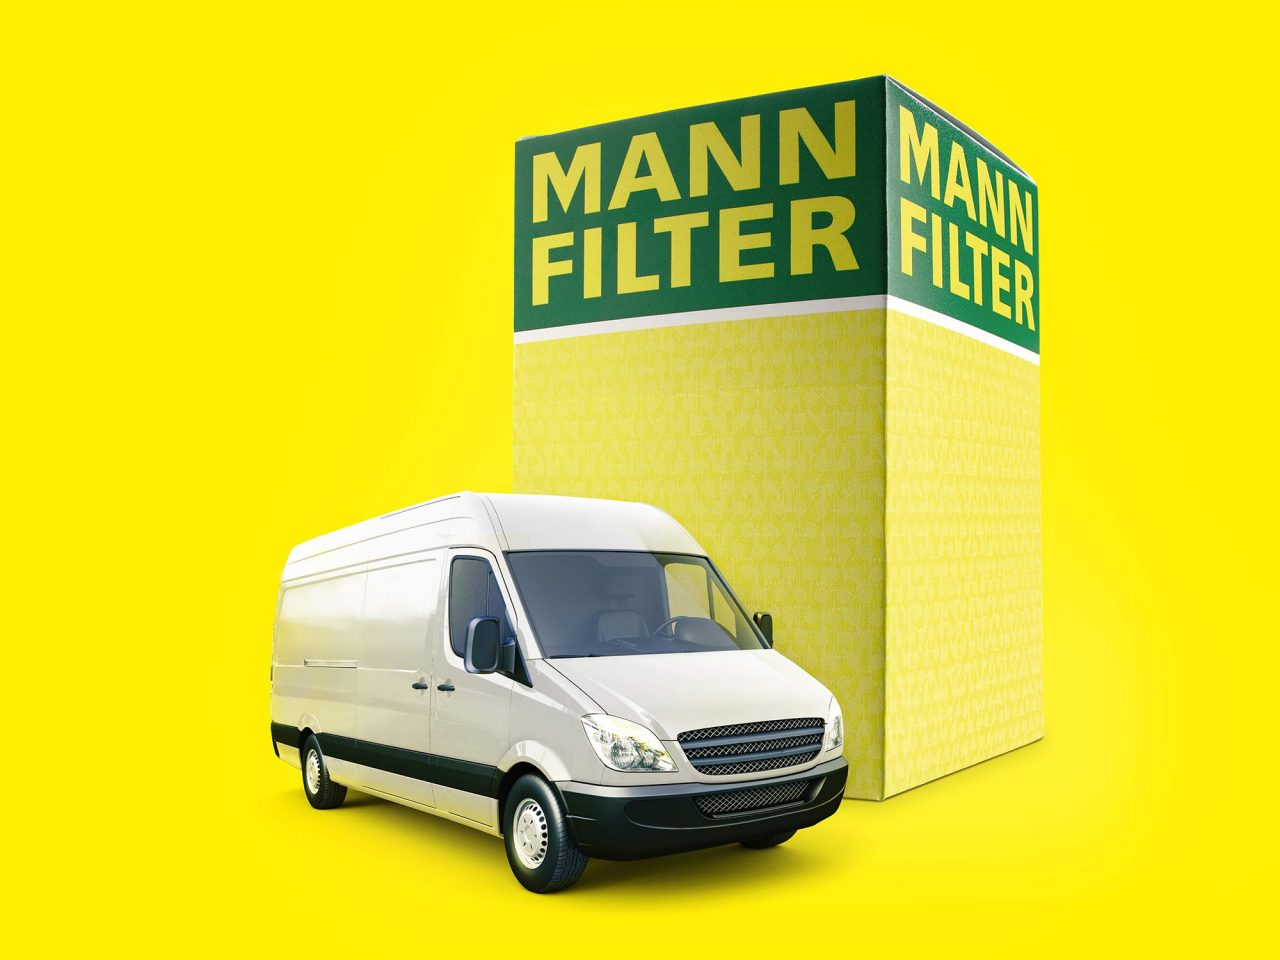 Das innovative MANN-FILTER Produktprogramm für eine Vielzahl an leichten Nutzfahrzeugen